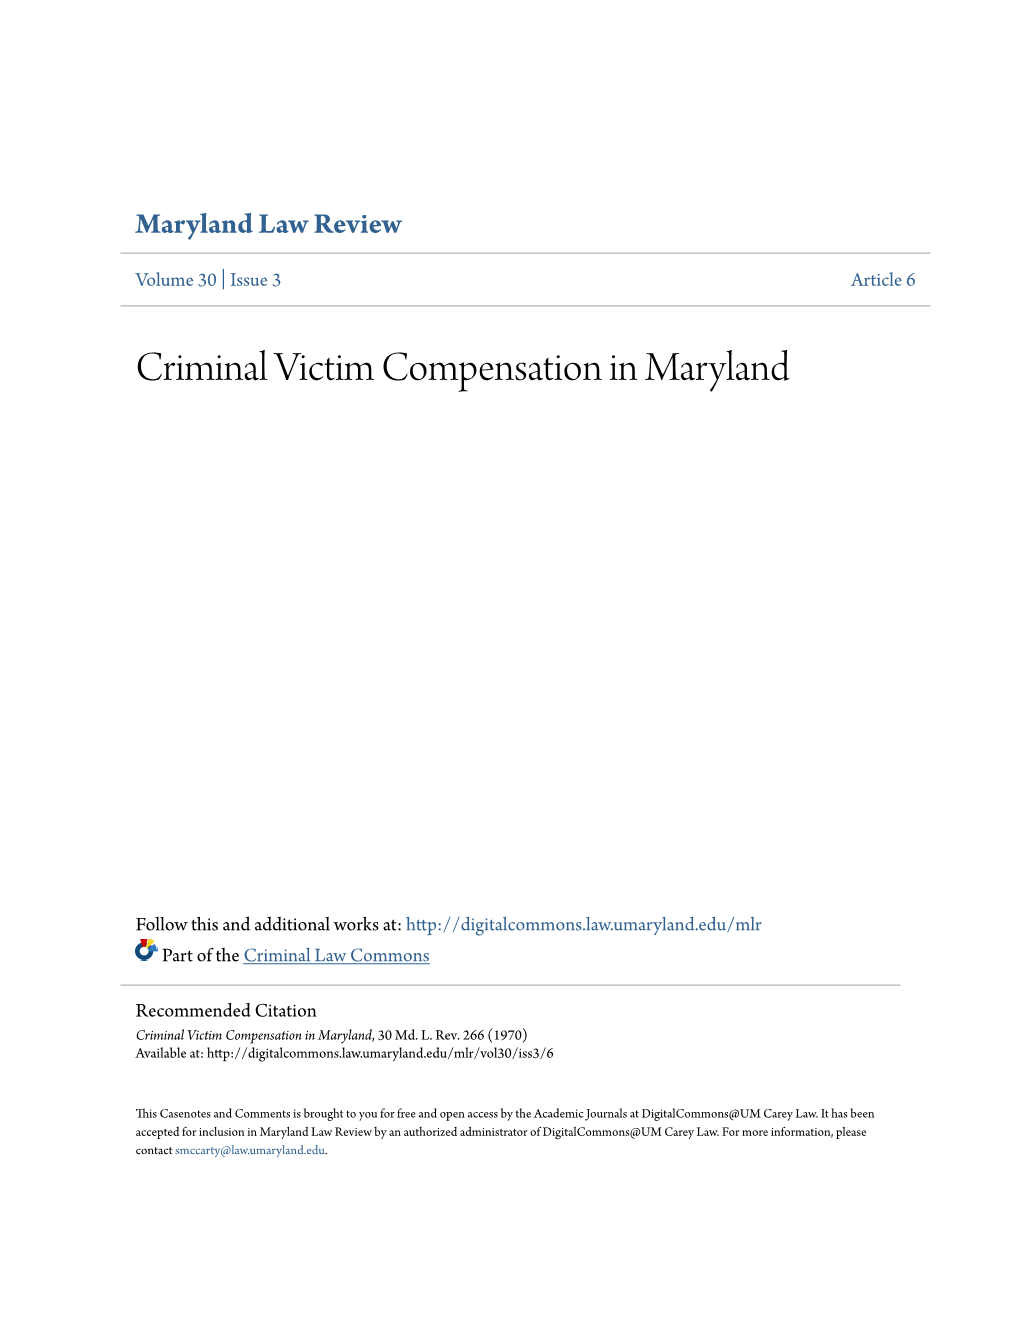 Criminal Victim Compensation in Maryland